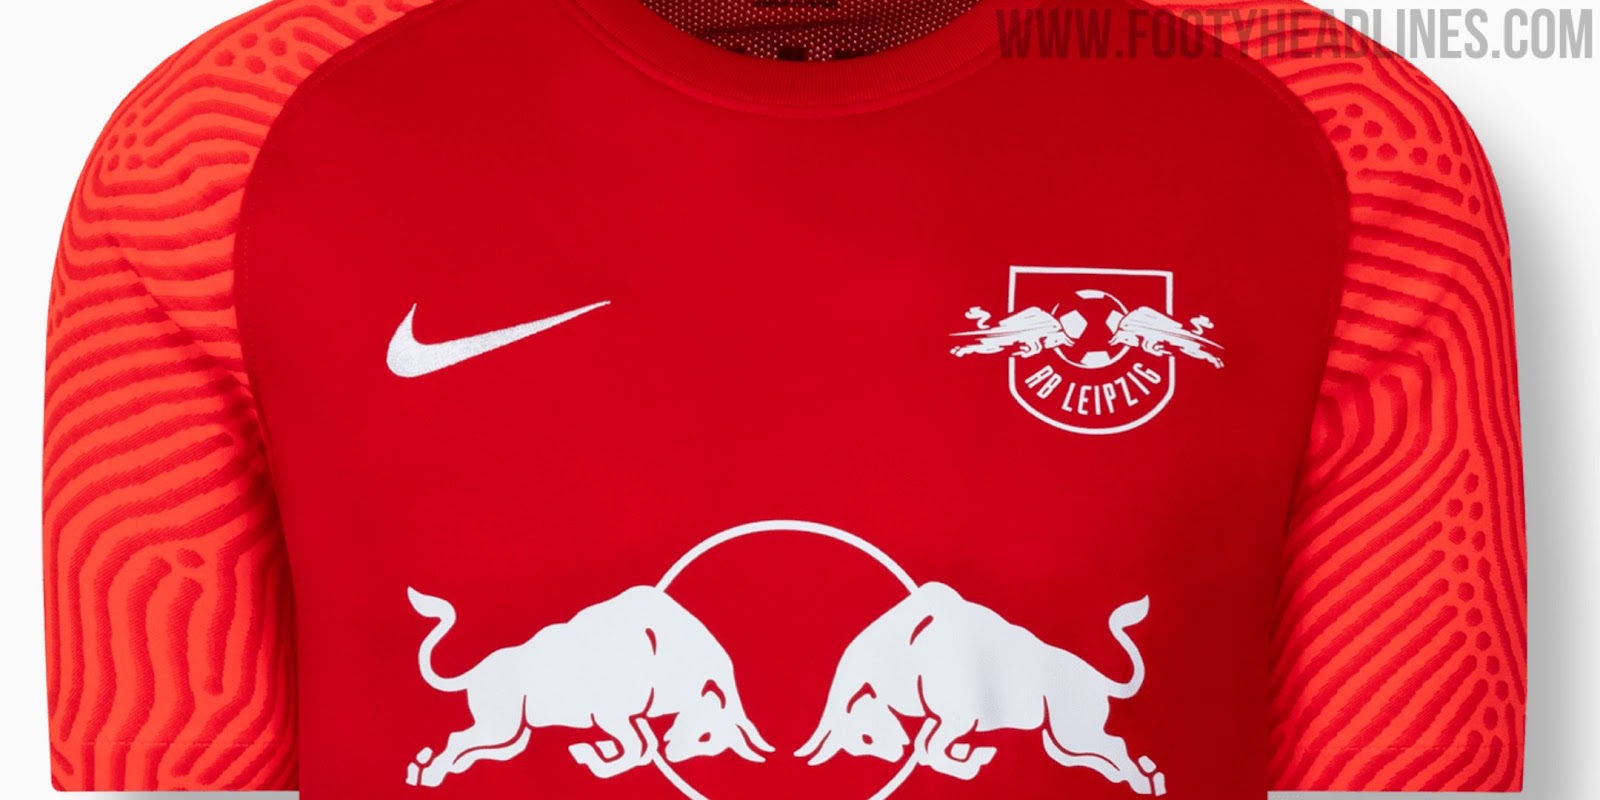 RB Leipzig 22-23 Home Kit Released - Footy Headlines